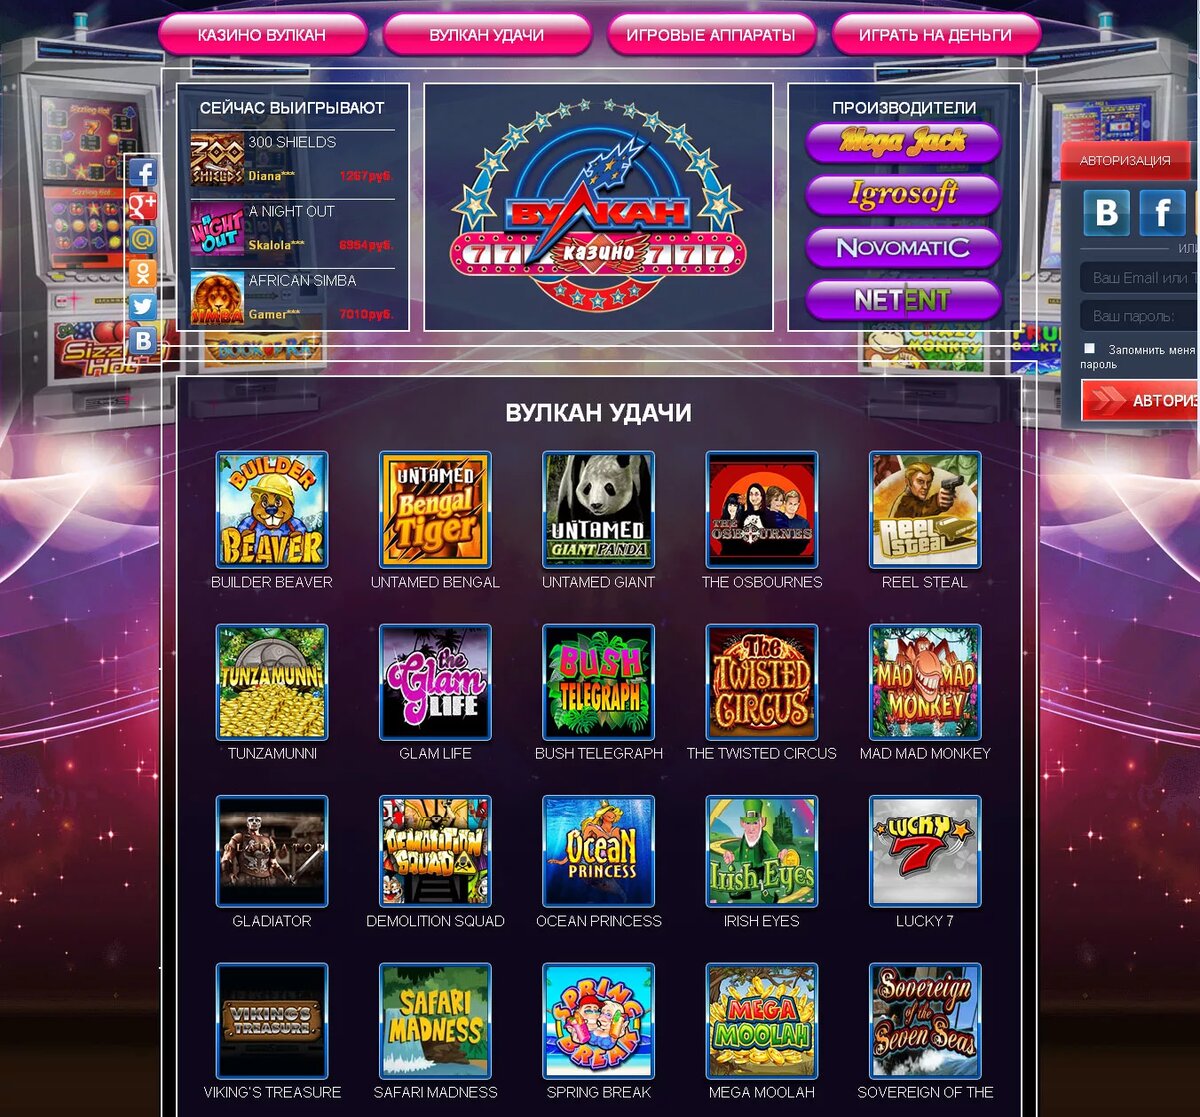 Игровые автоматы удача играть бесплатно монако вход в казино